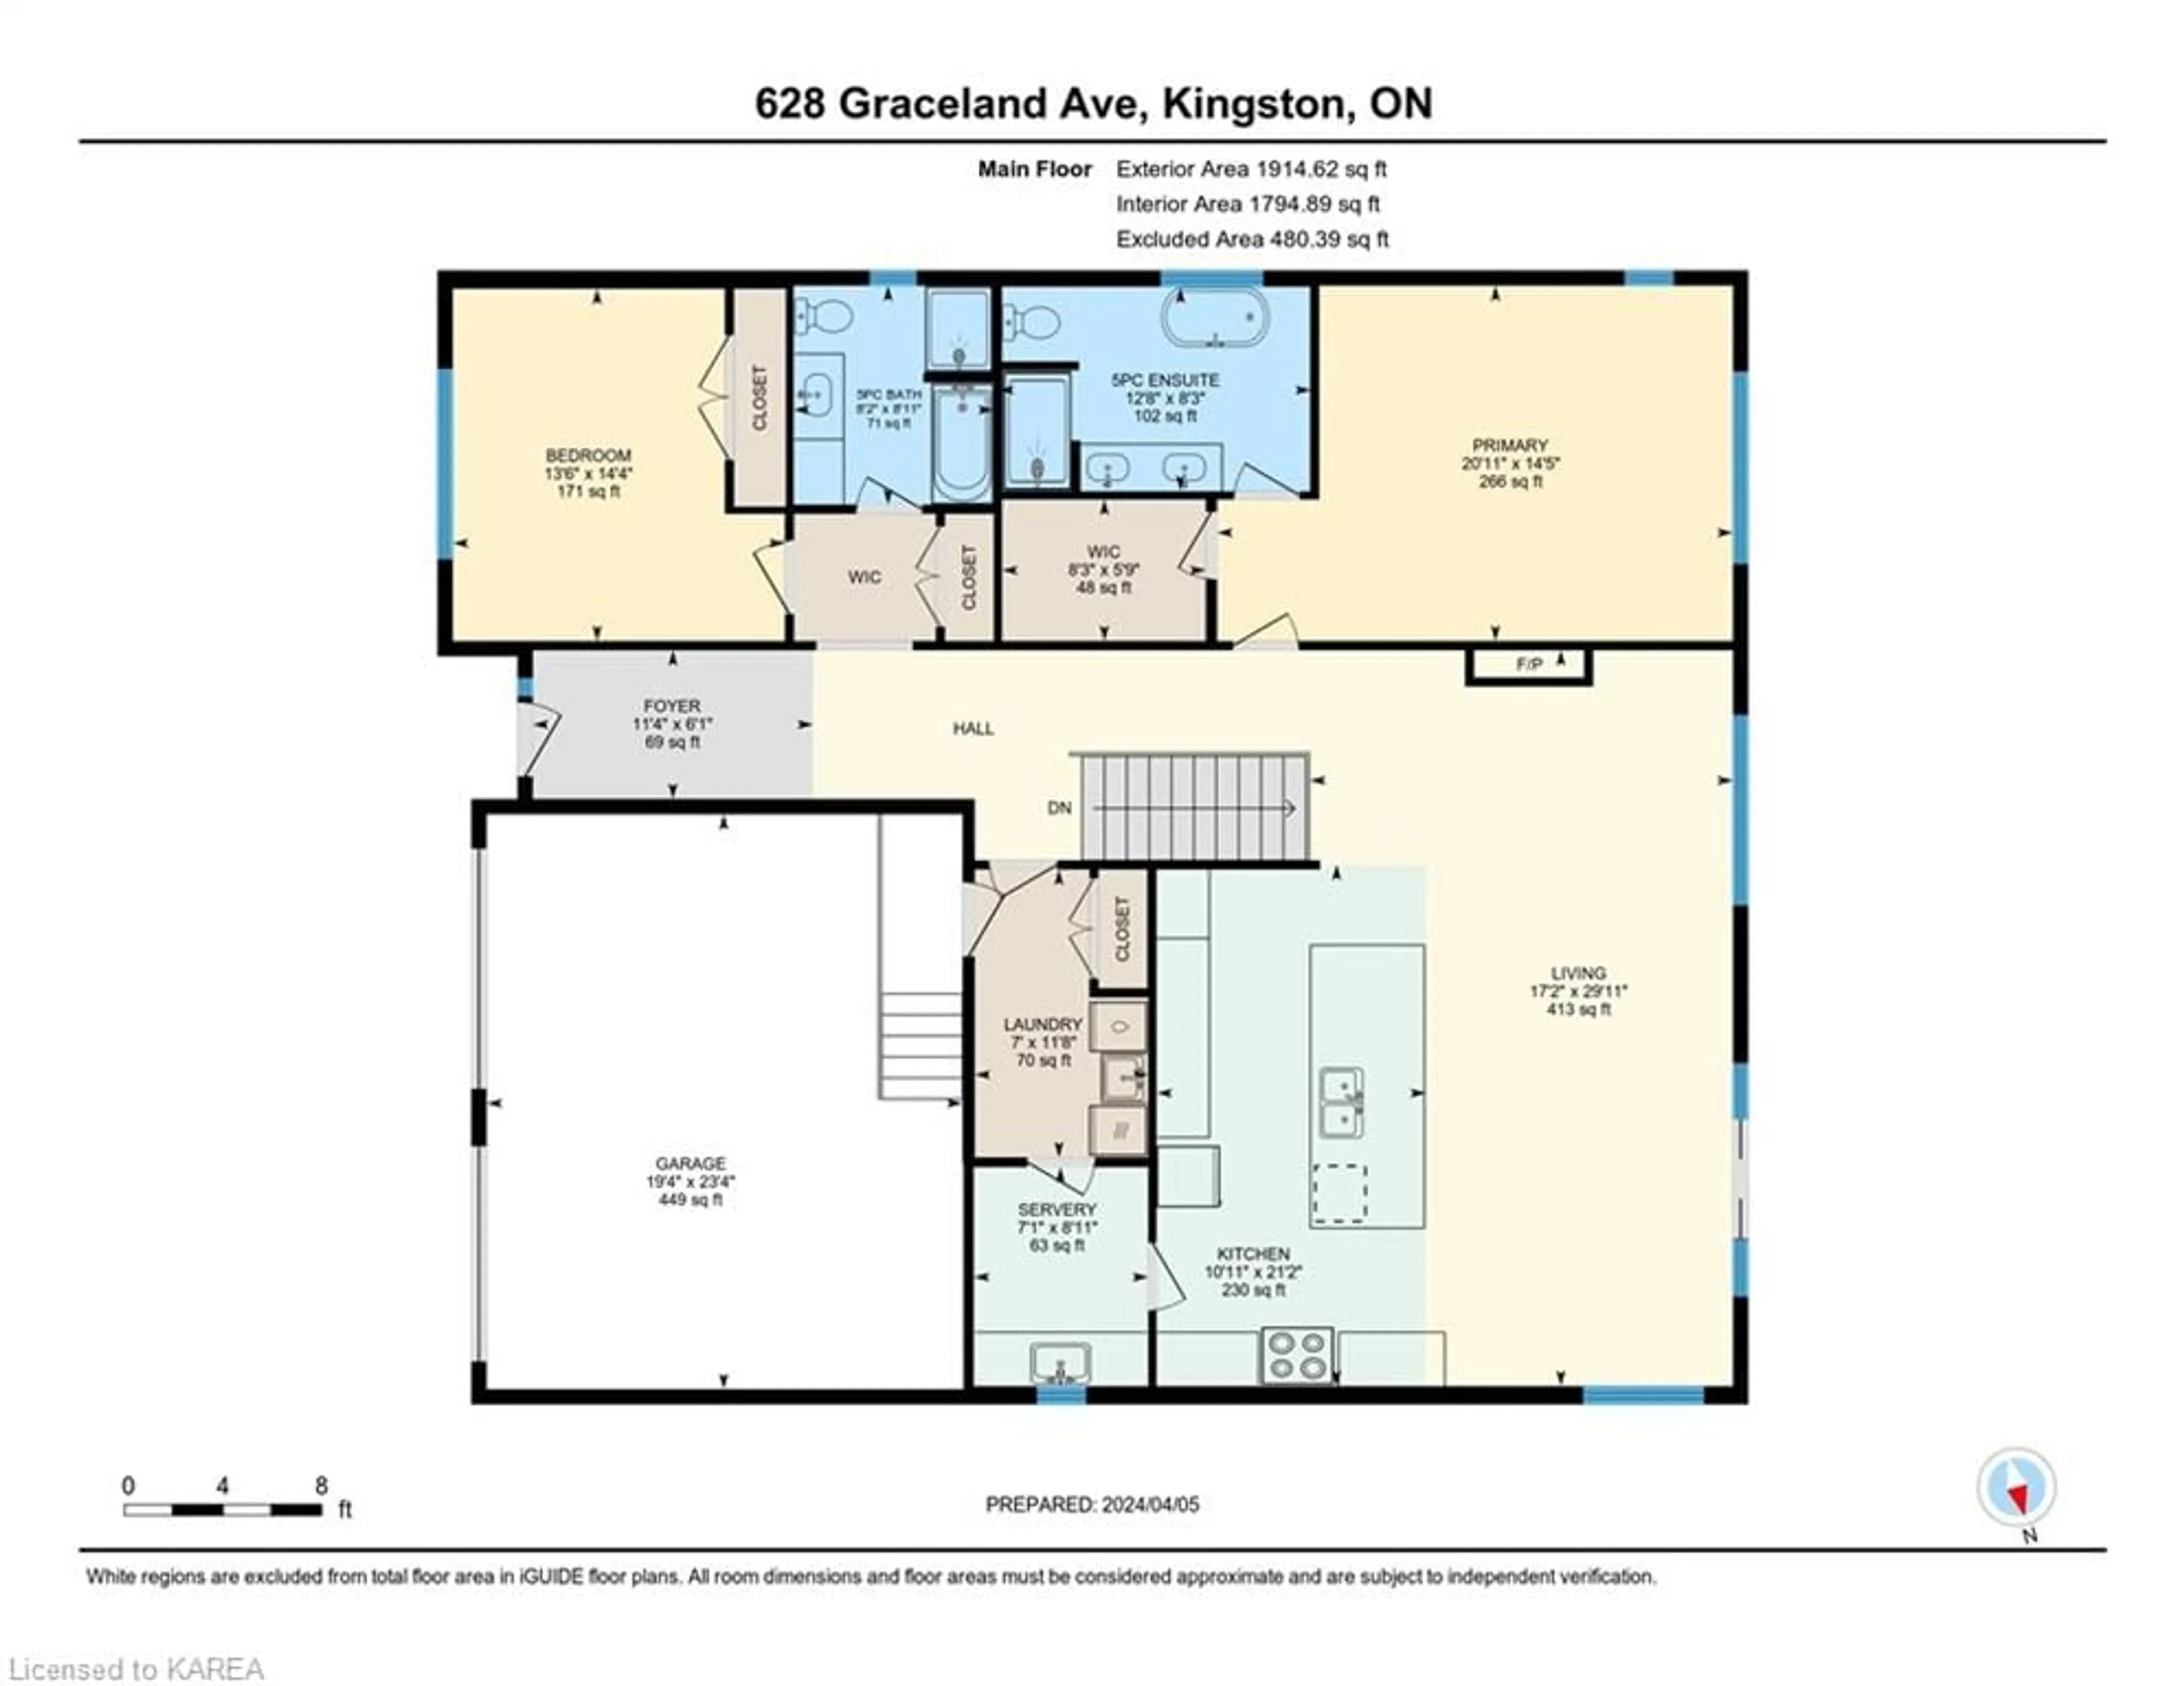 Floor plan for 628 Graceland Ave, Kingston Ontario K7M 7P7